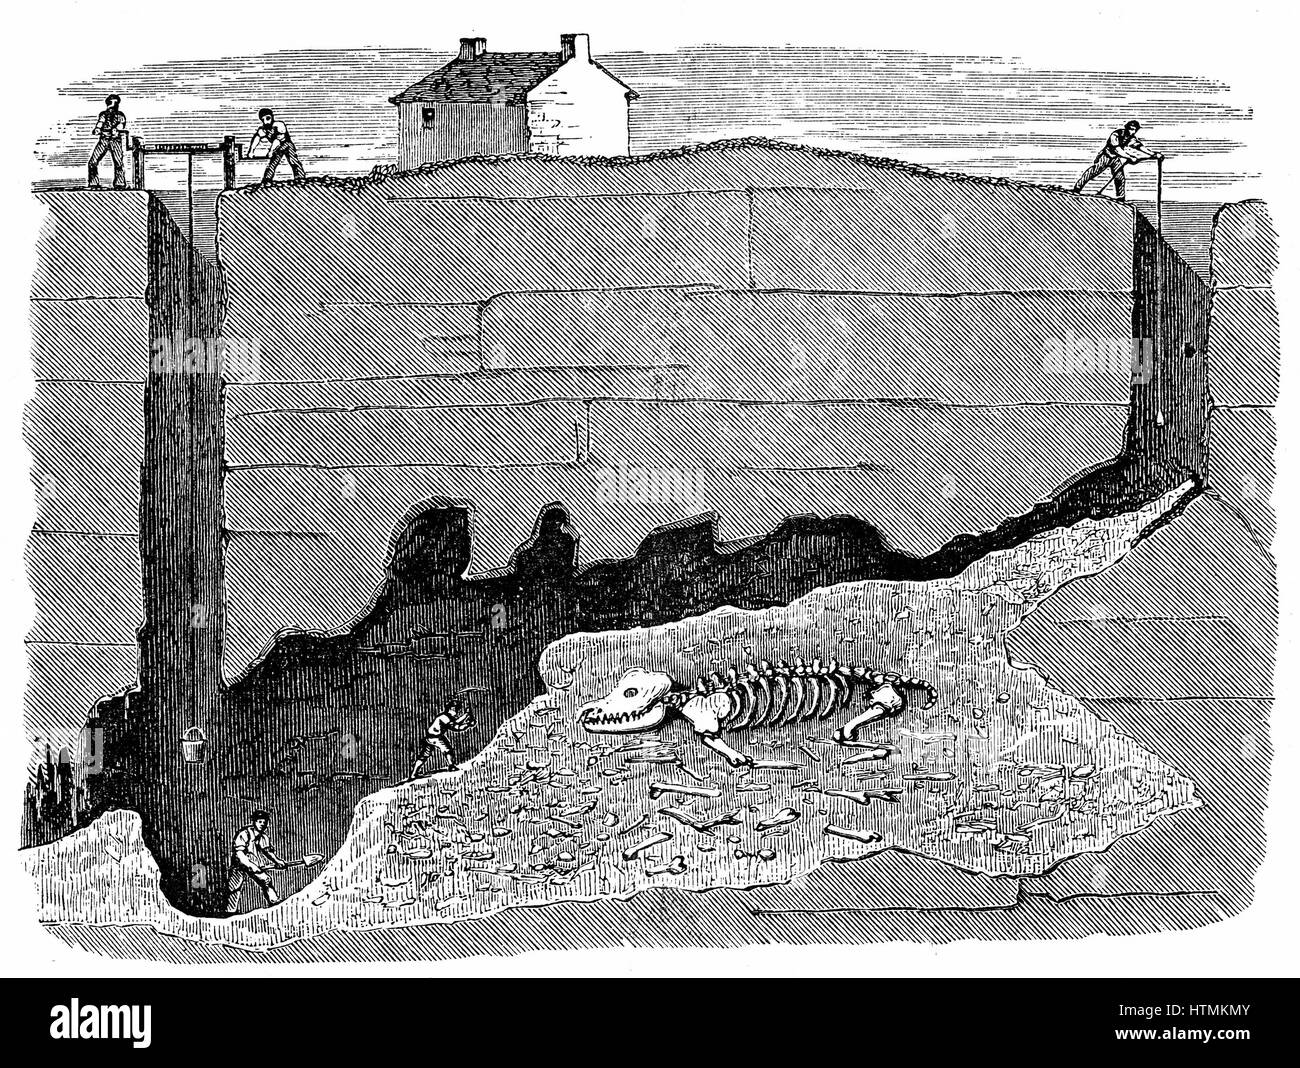 Vista transversal de sueño mina de plomo, cerca de Wirksworth, Derbyshire, mostrando el funcionamiento y la posición en la que el esqueleto del rinoceronte fue descubierto. Grabado en madera de 1881 Foto de stock